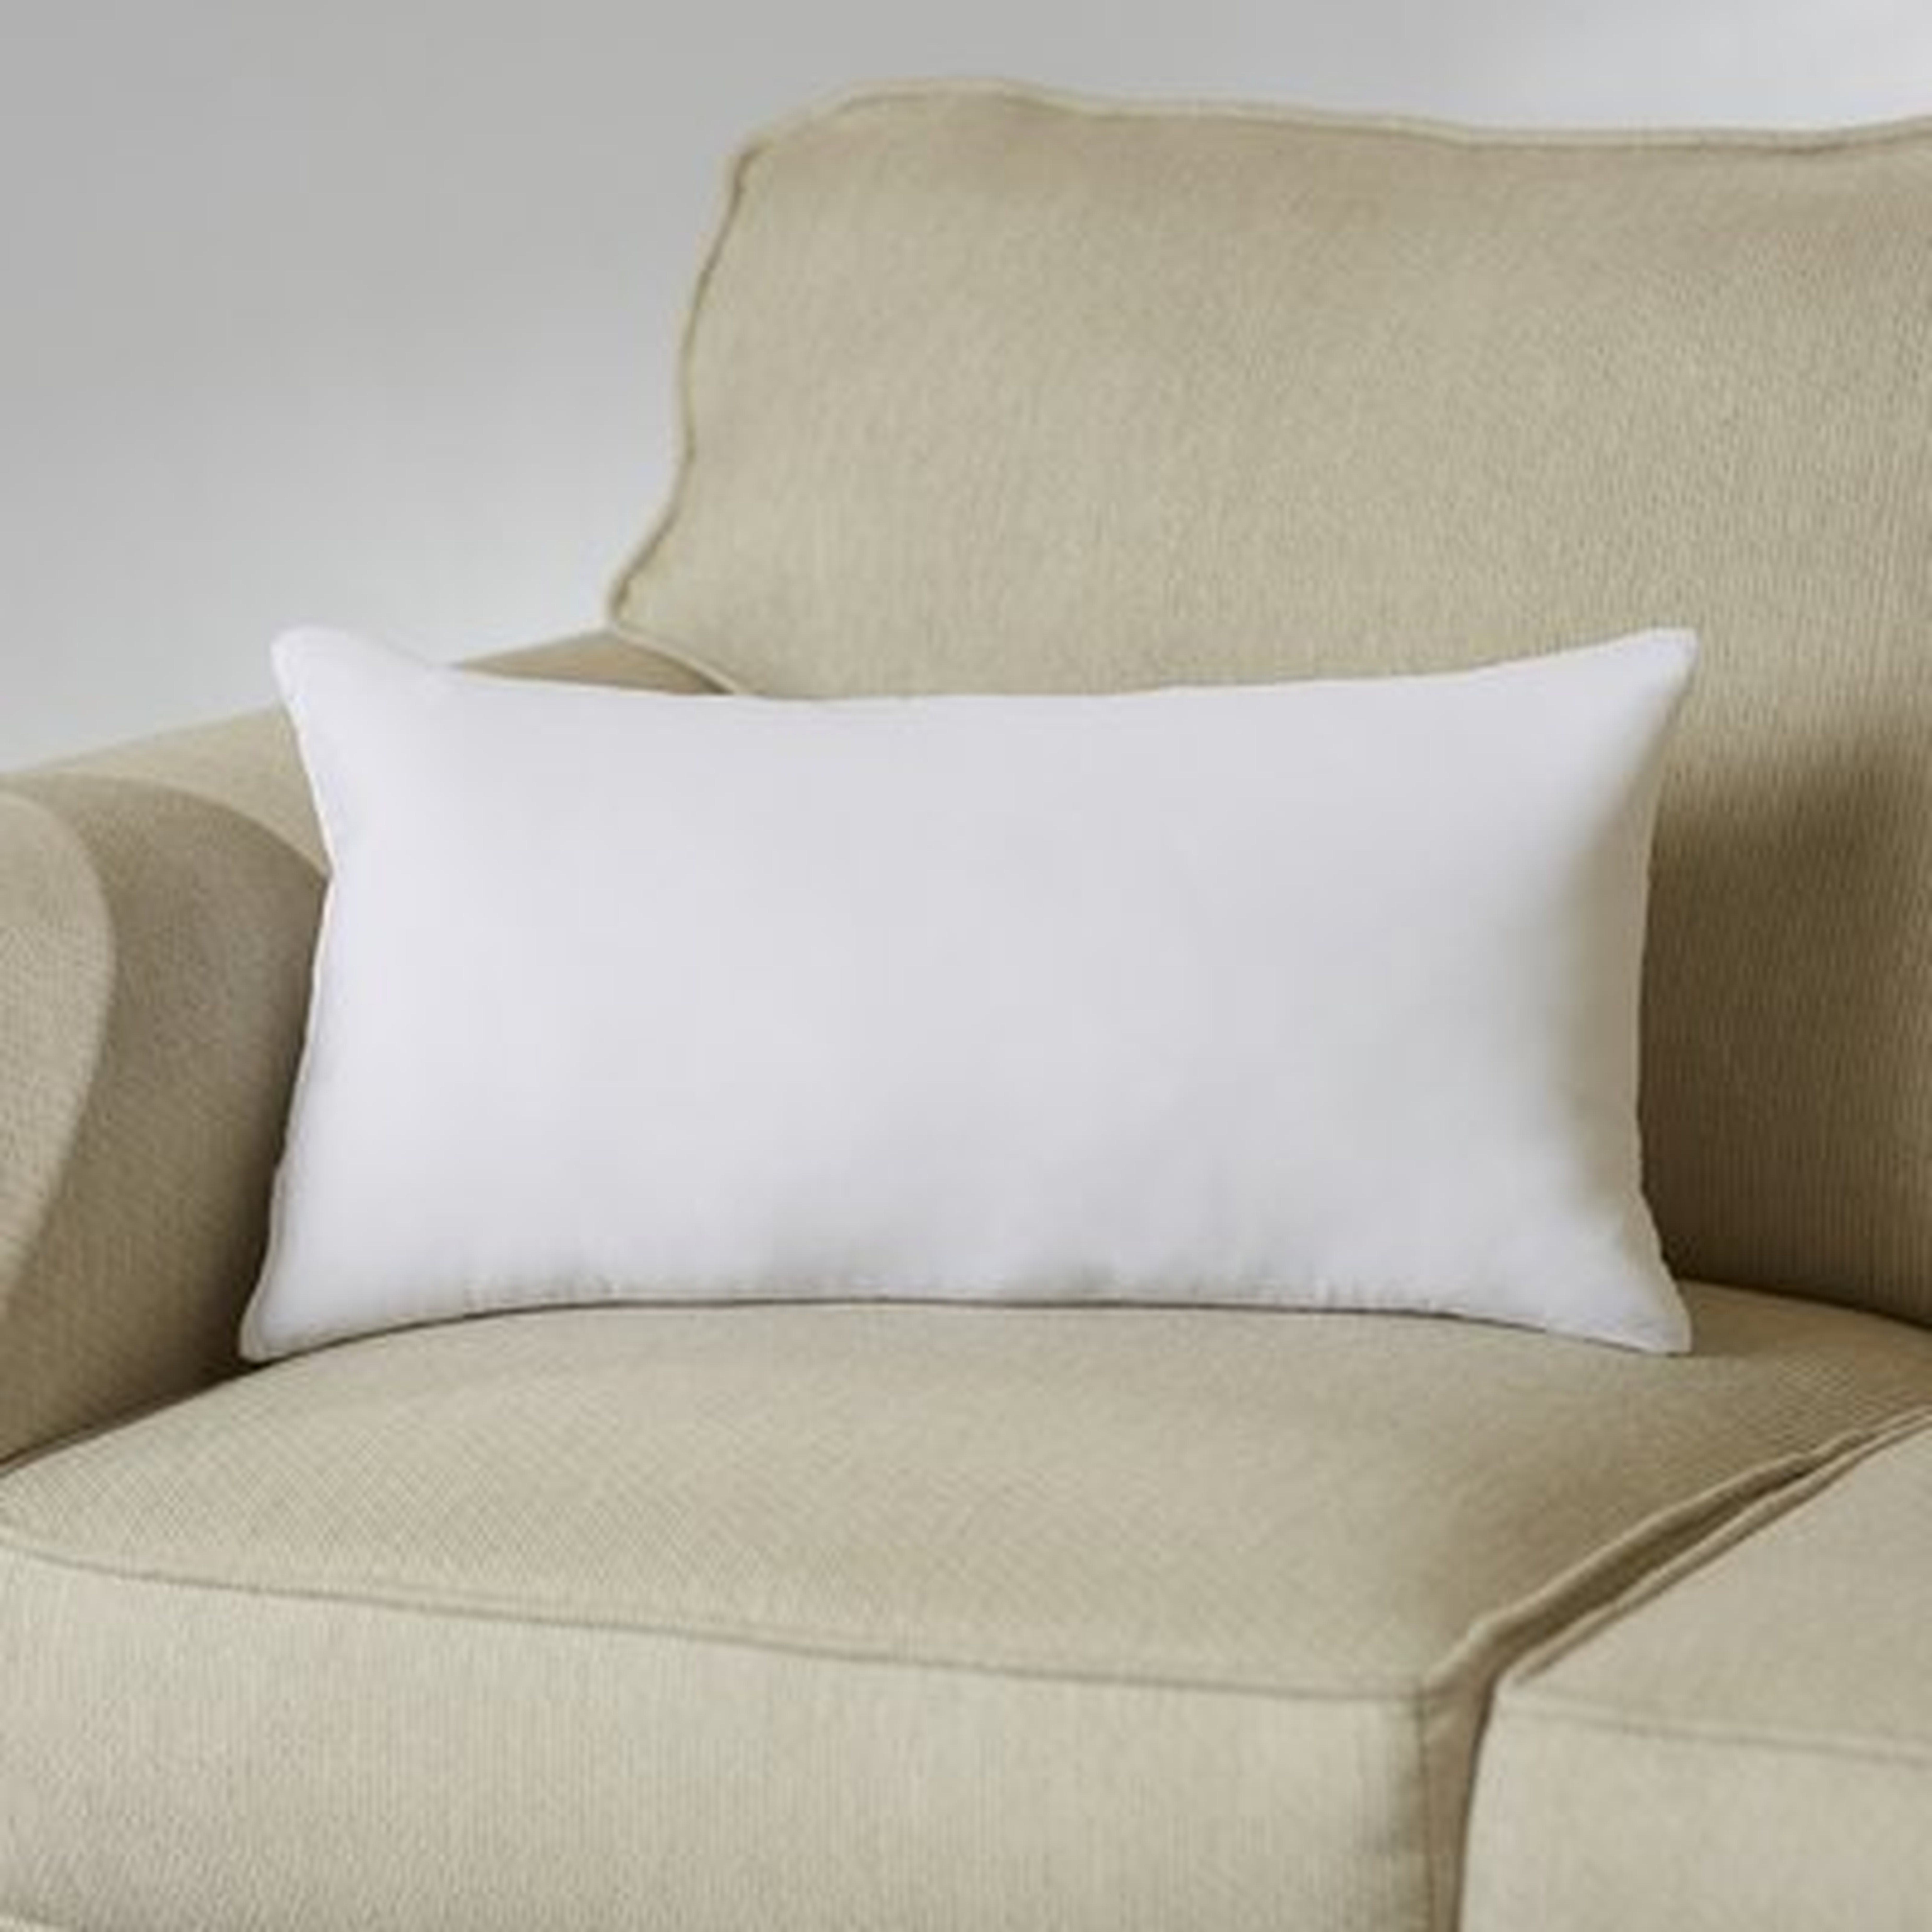 Wayfair Basics Pillow Insert - Wayfair